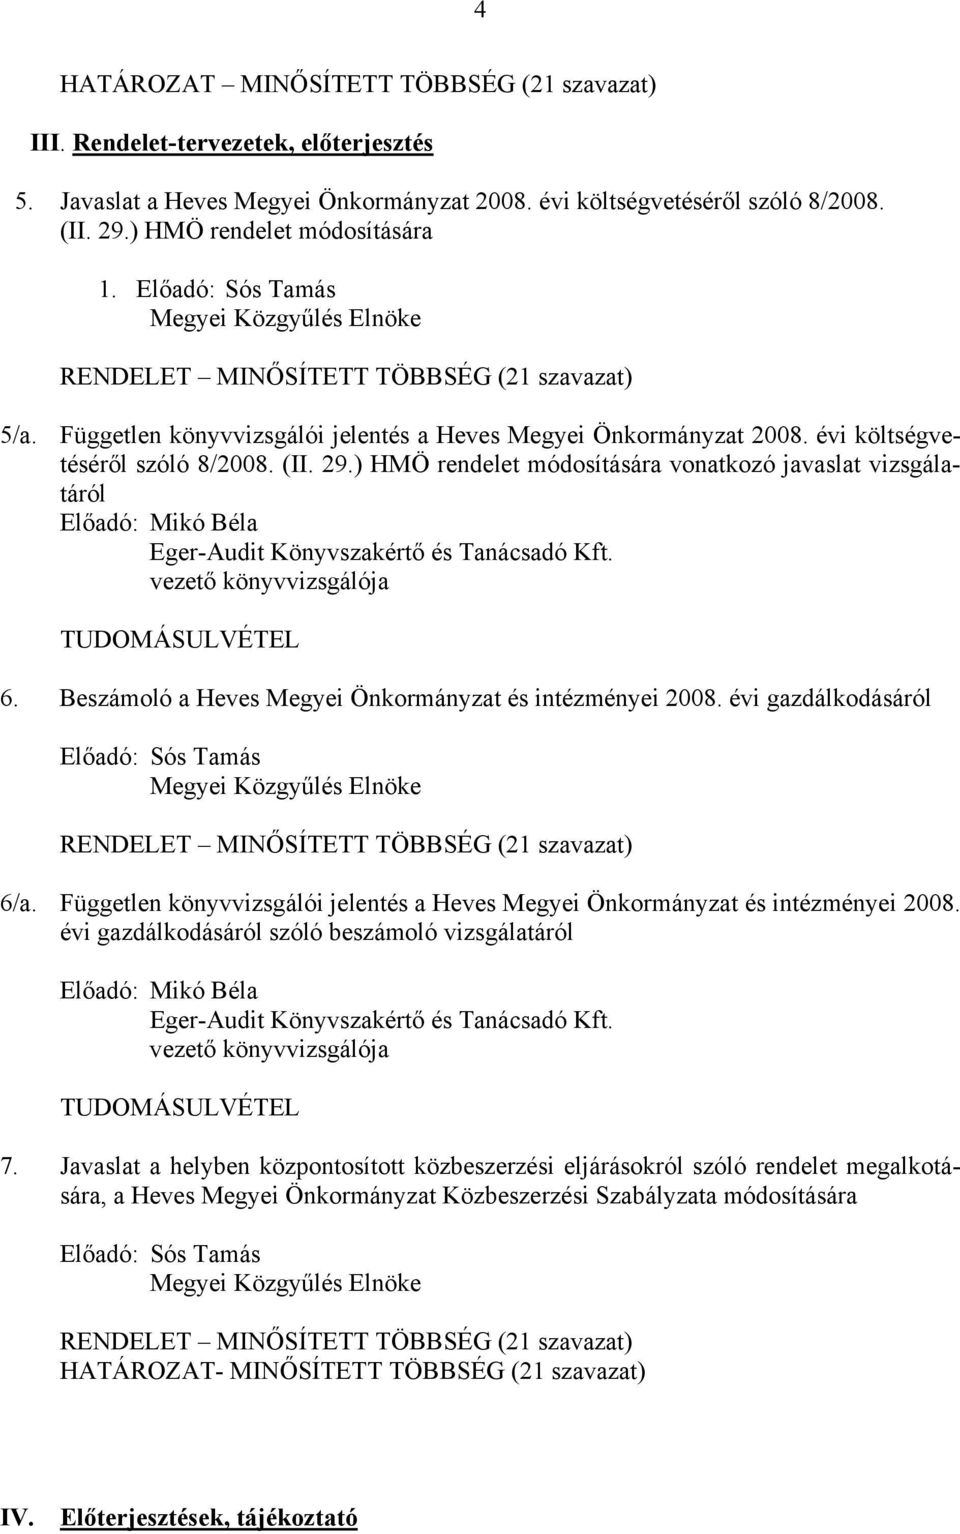 évi költségvetéséről szóló 8/2008. (II. 29.) HMÖ rendelet módosítására vonatkozó javaslat vizsgálatáról Előadó: Mikó Béla Eger-Audit Könyvszakértő és Tanácsadó Kft.